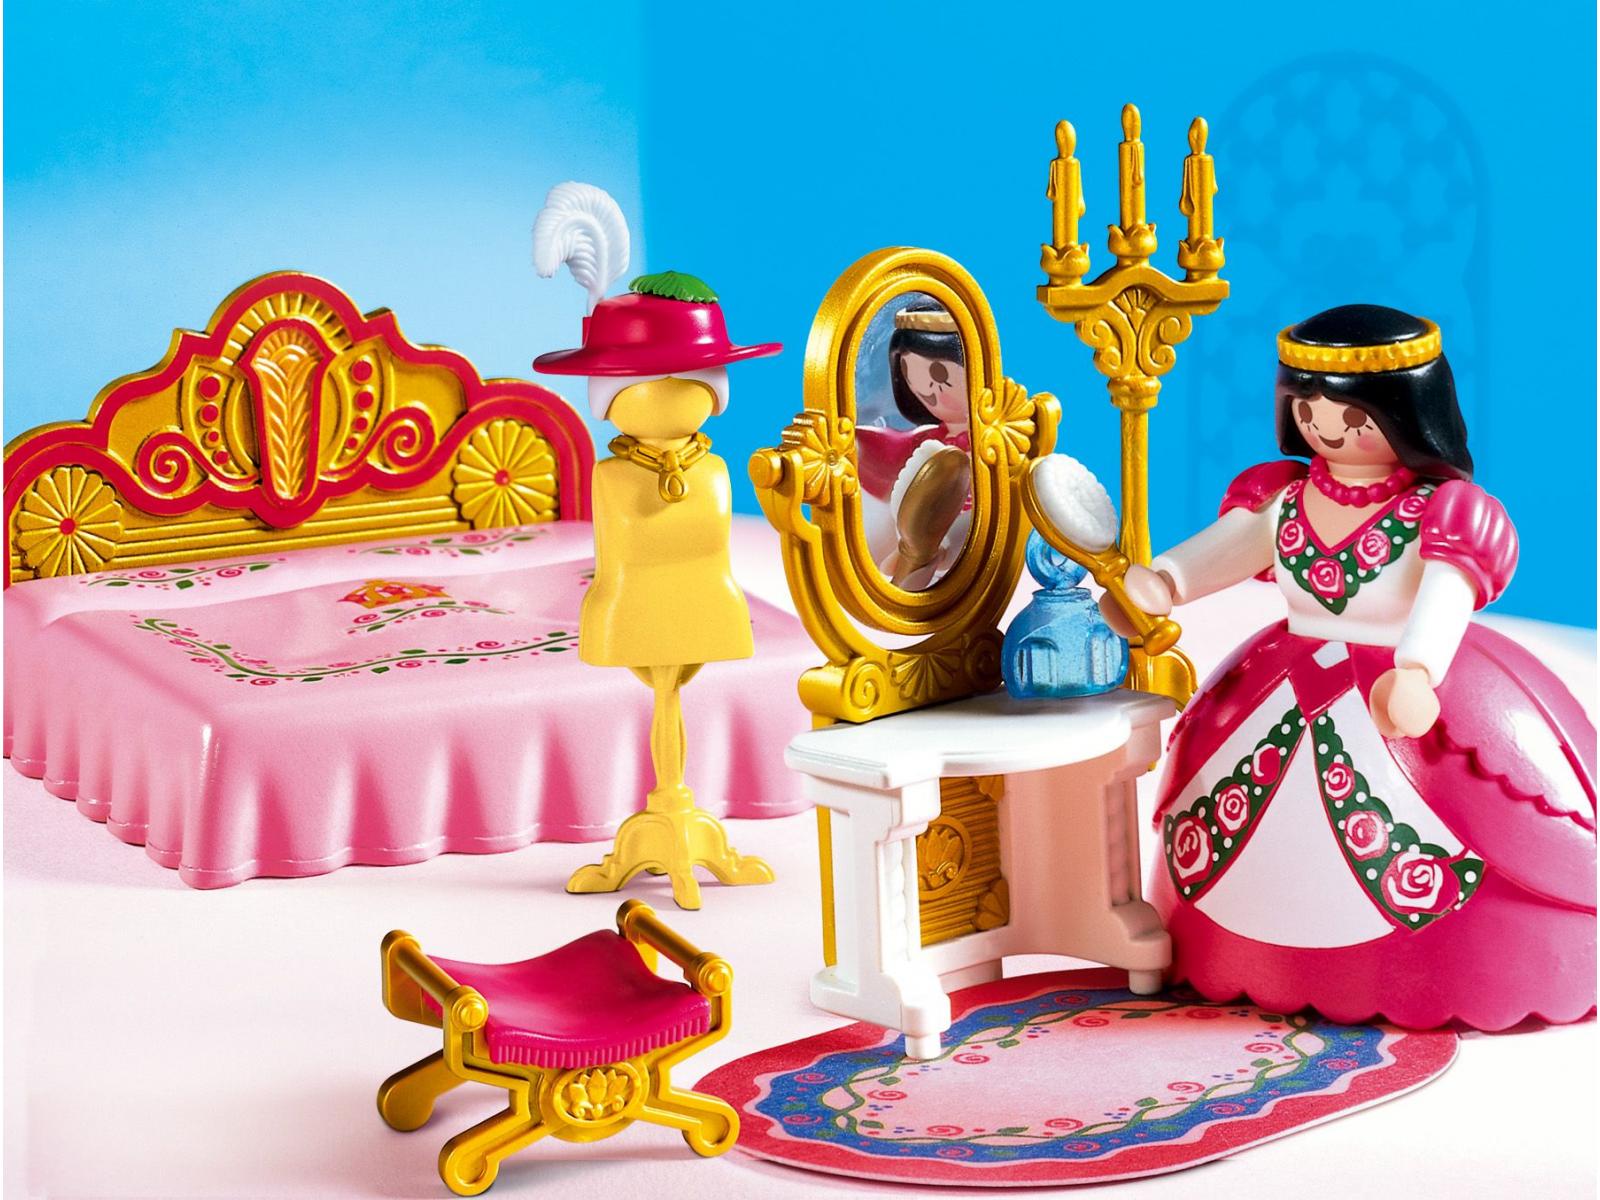 Playmobil - Princesse / chambre